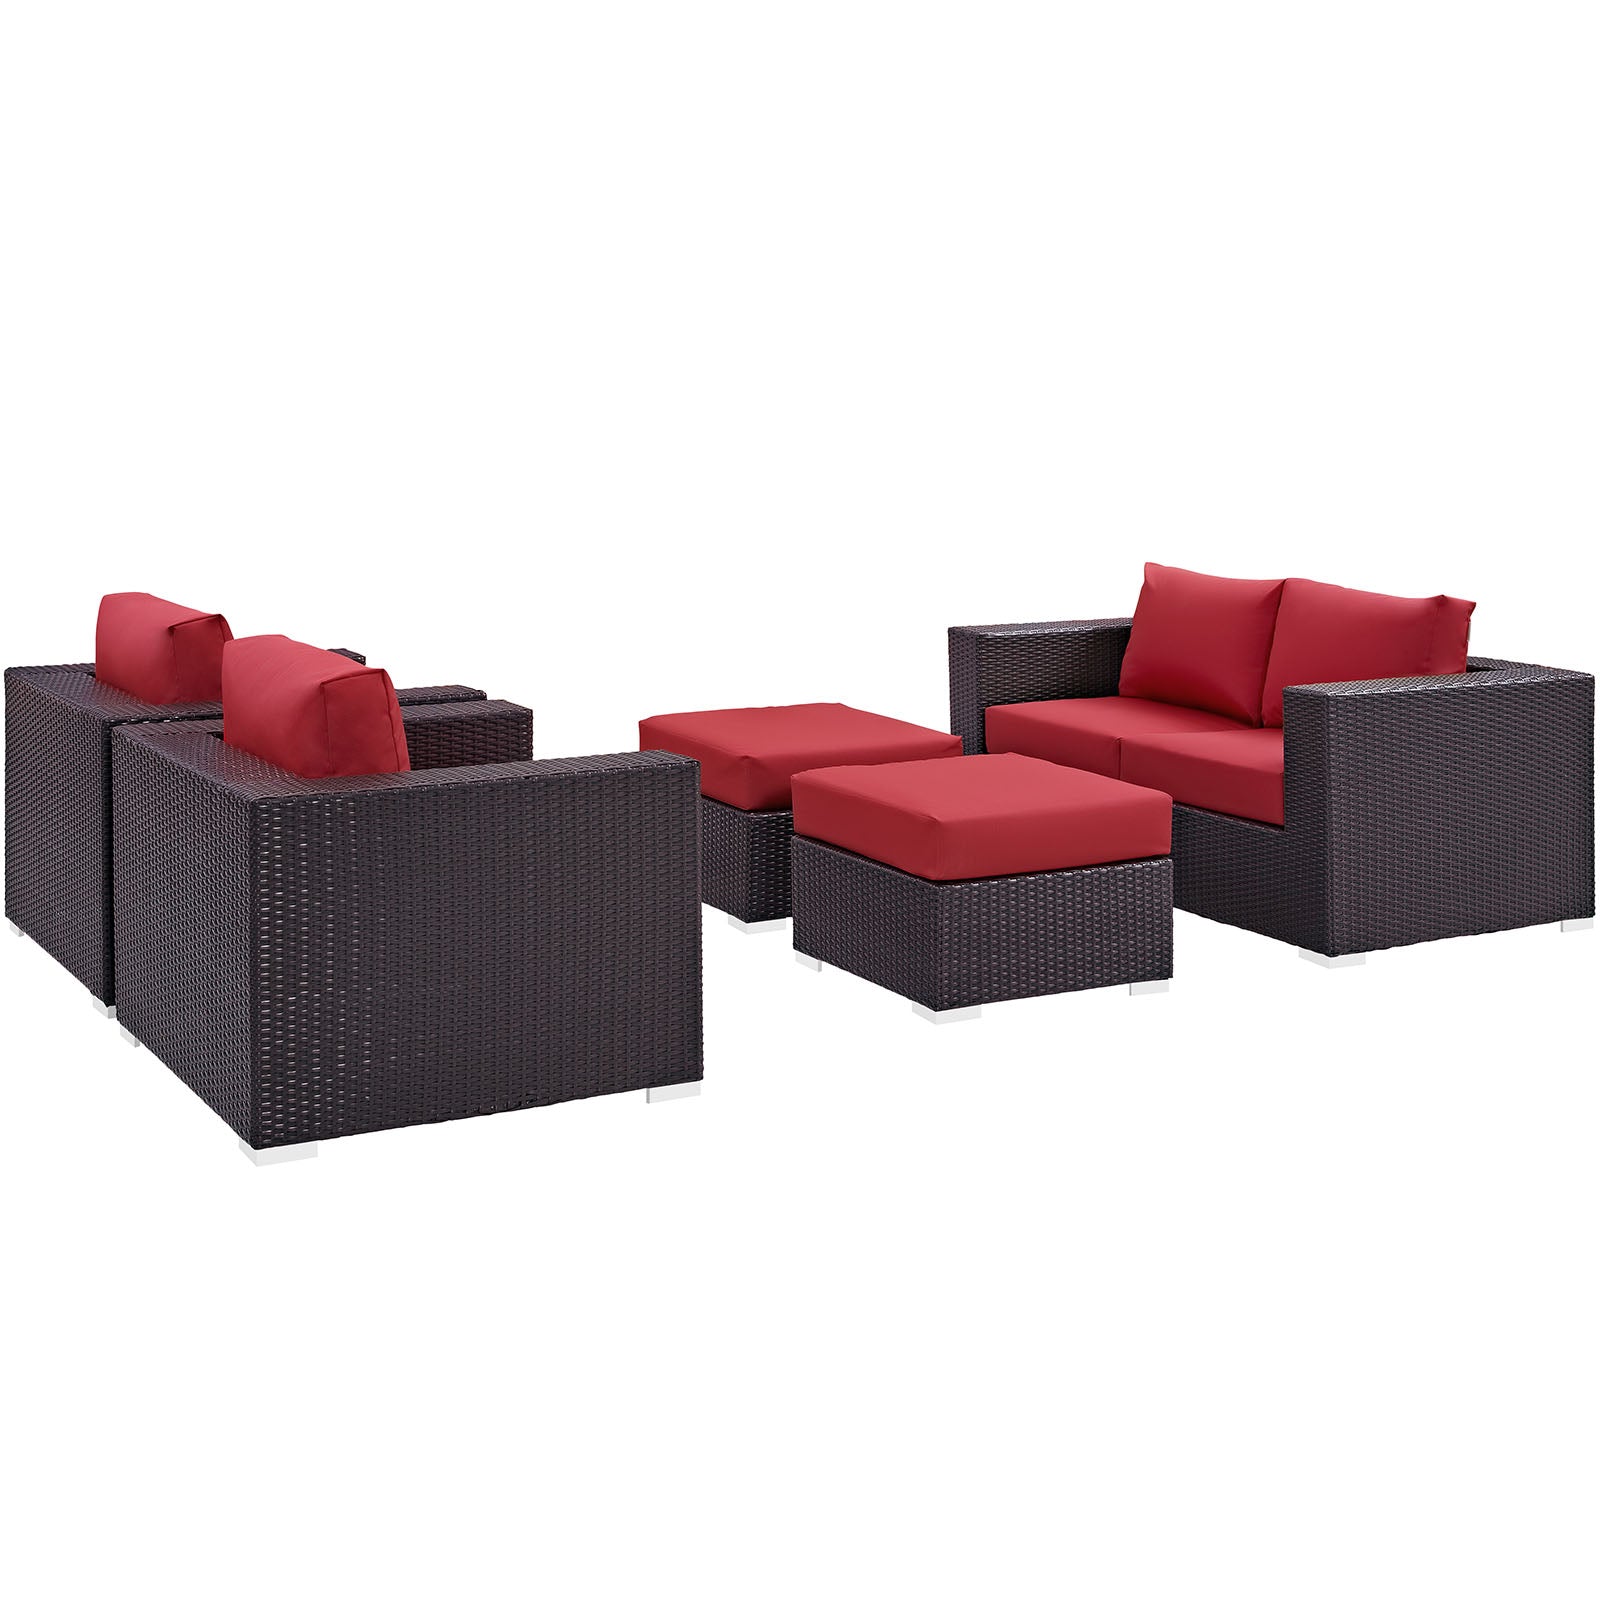 Modway - Convene 5 Piece Outdoor Patio Sofa Set - EEI-2158